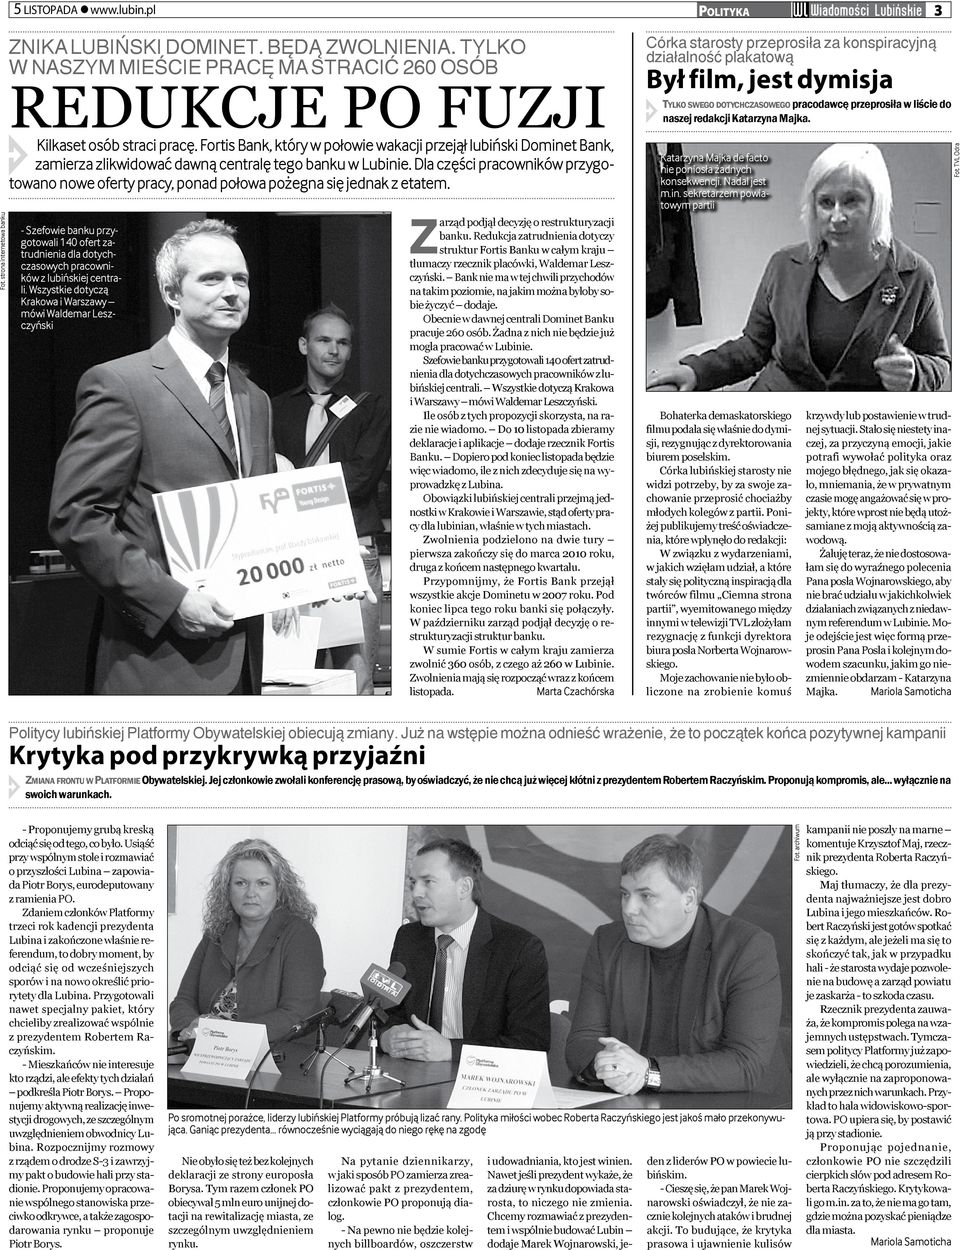 Redukcja zatrudnienia dotyczy struktur Fortis Banku w całym kraju tłumaczy rzecznik placówki, Waldemar Leszczyński.